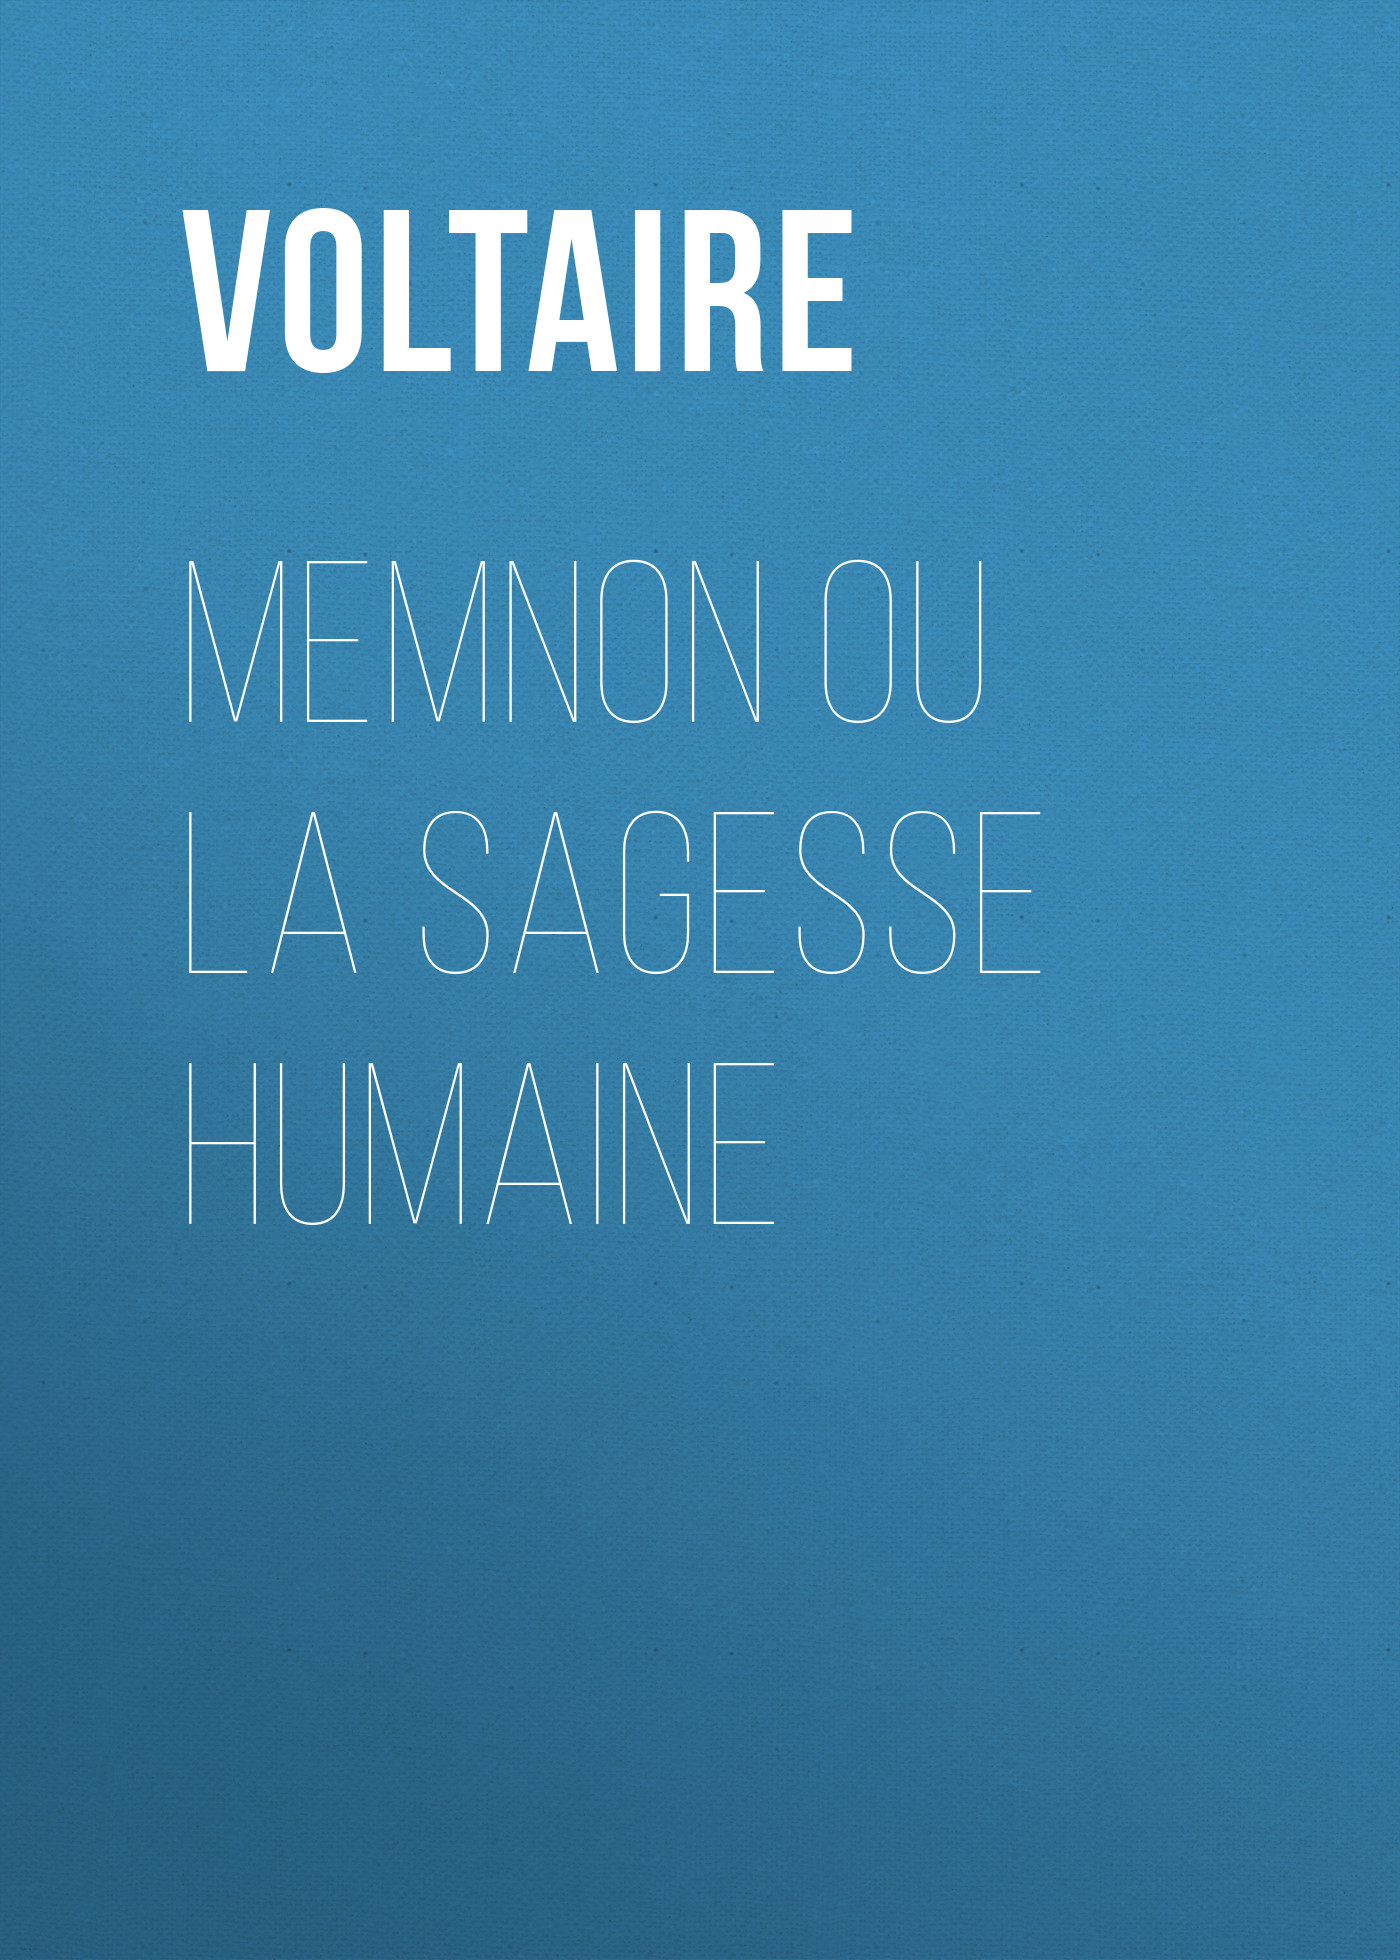 Книга Memnon ou la sagesse humaine из серии , созданная  Voltaire, может относится к жанру Литература 18 века, Зарубежная классика. Стоимость электронной книги Memnon ou la sagesse humaine с идентификатором 25561172 составляет 0 руб.